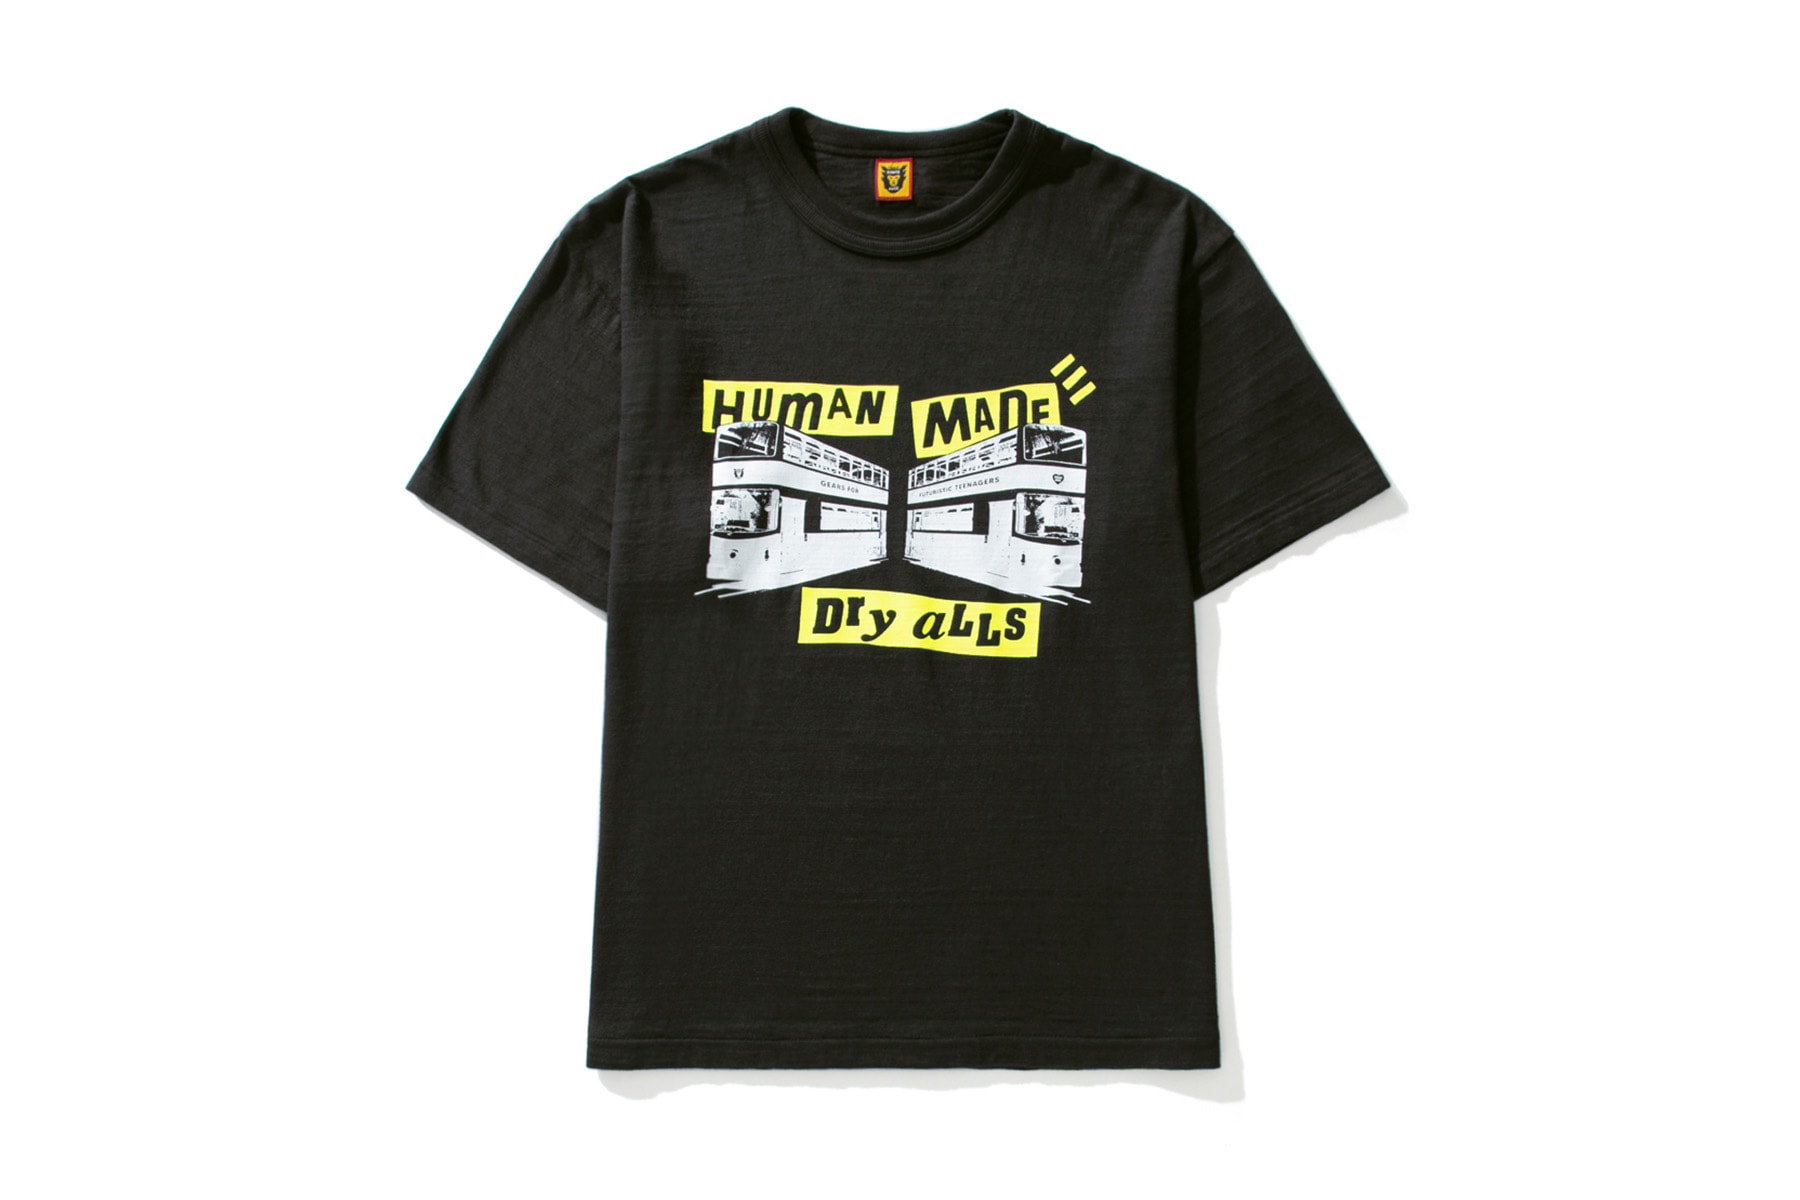 Human Made by HBX 最新联名 T-Shirt 正式登场